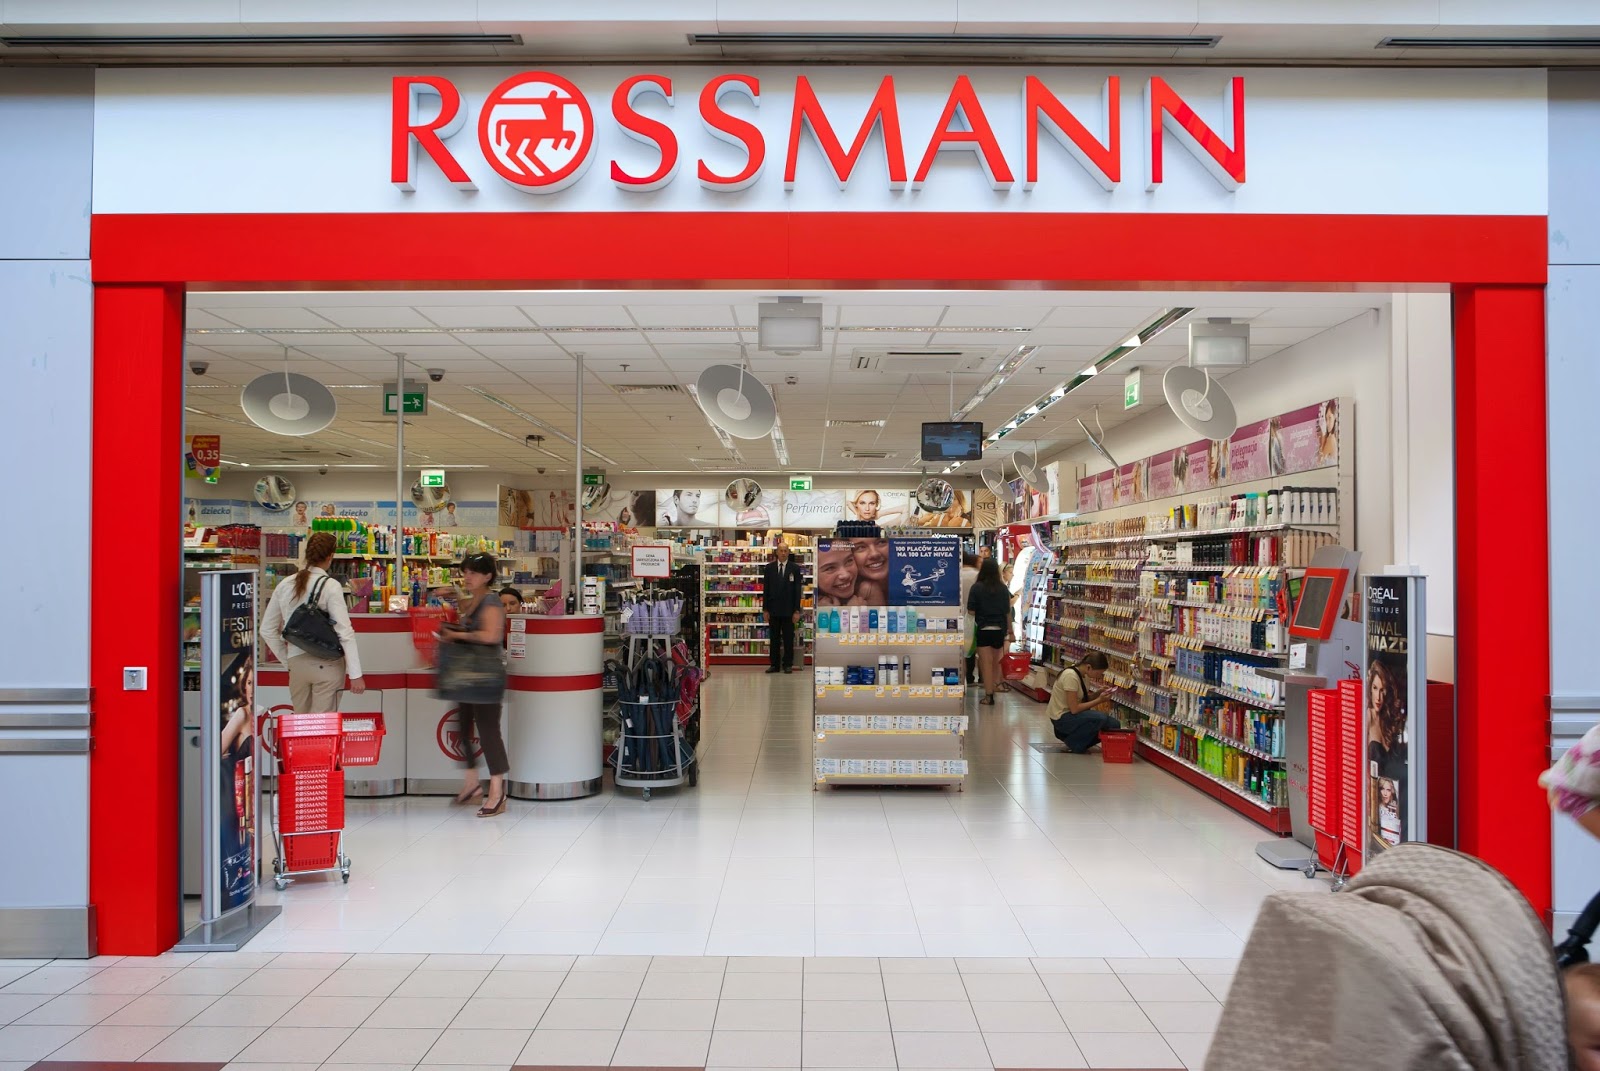 20 Million Euro fine for Rossmann